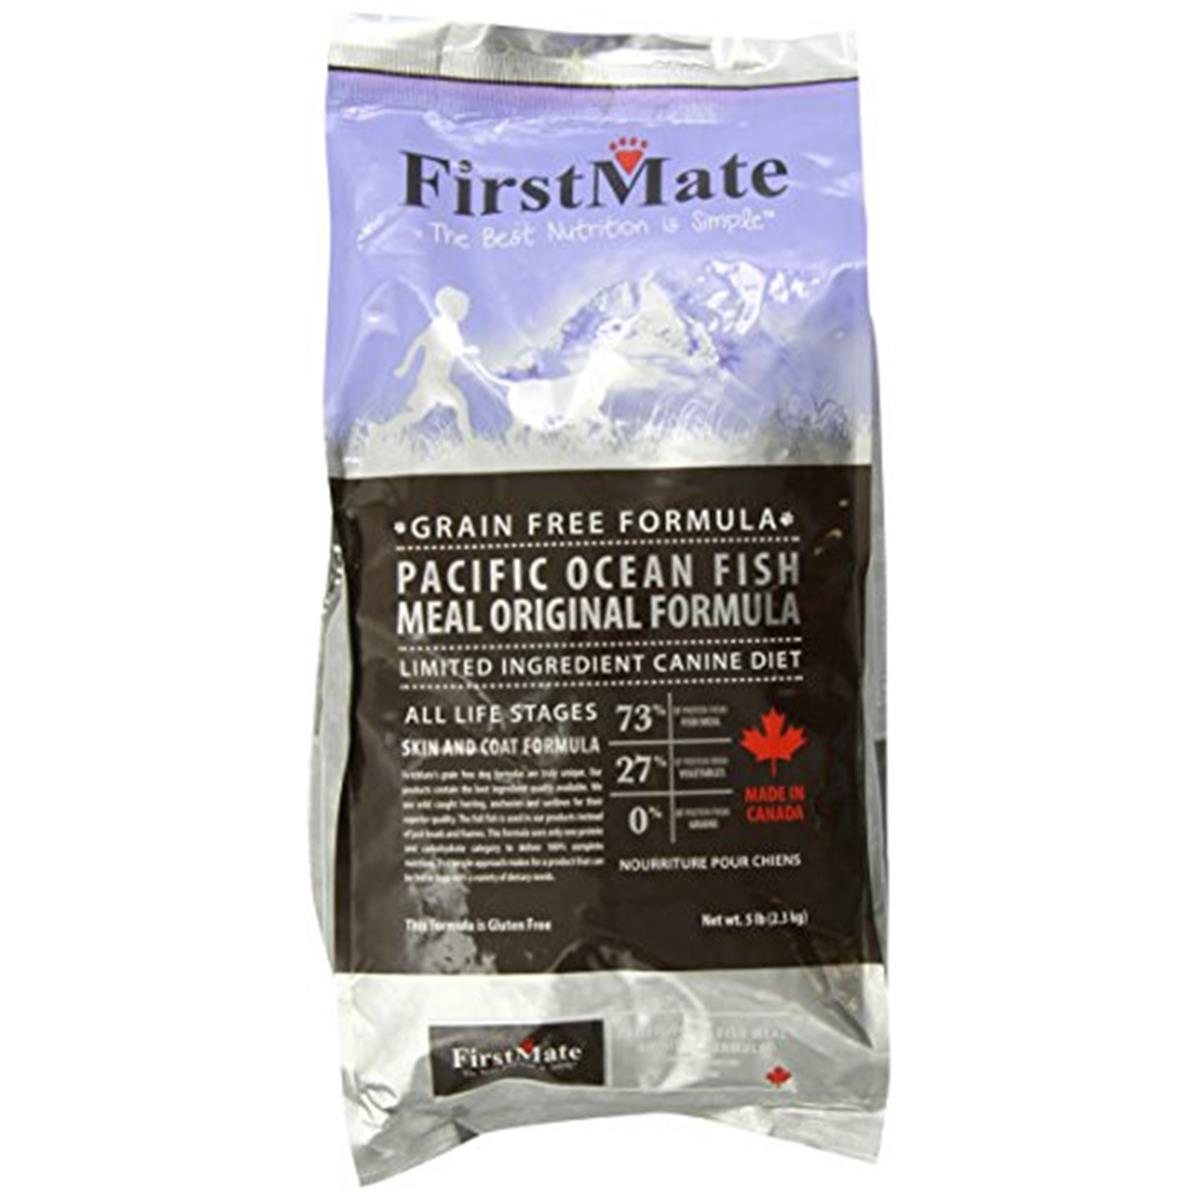 Fi10022 Grain Free Pacific Ocean Fish Original - 5 Lbs